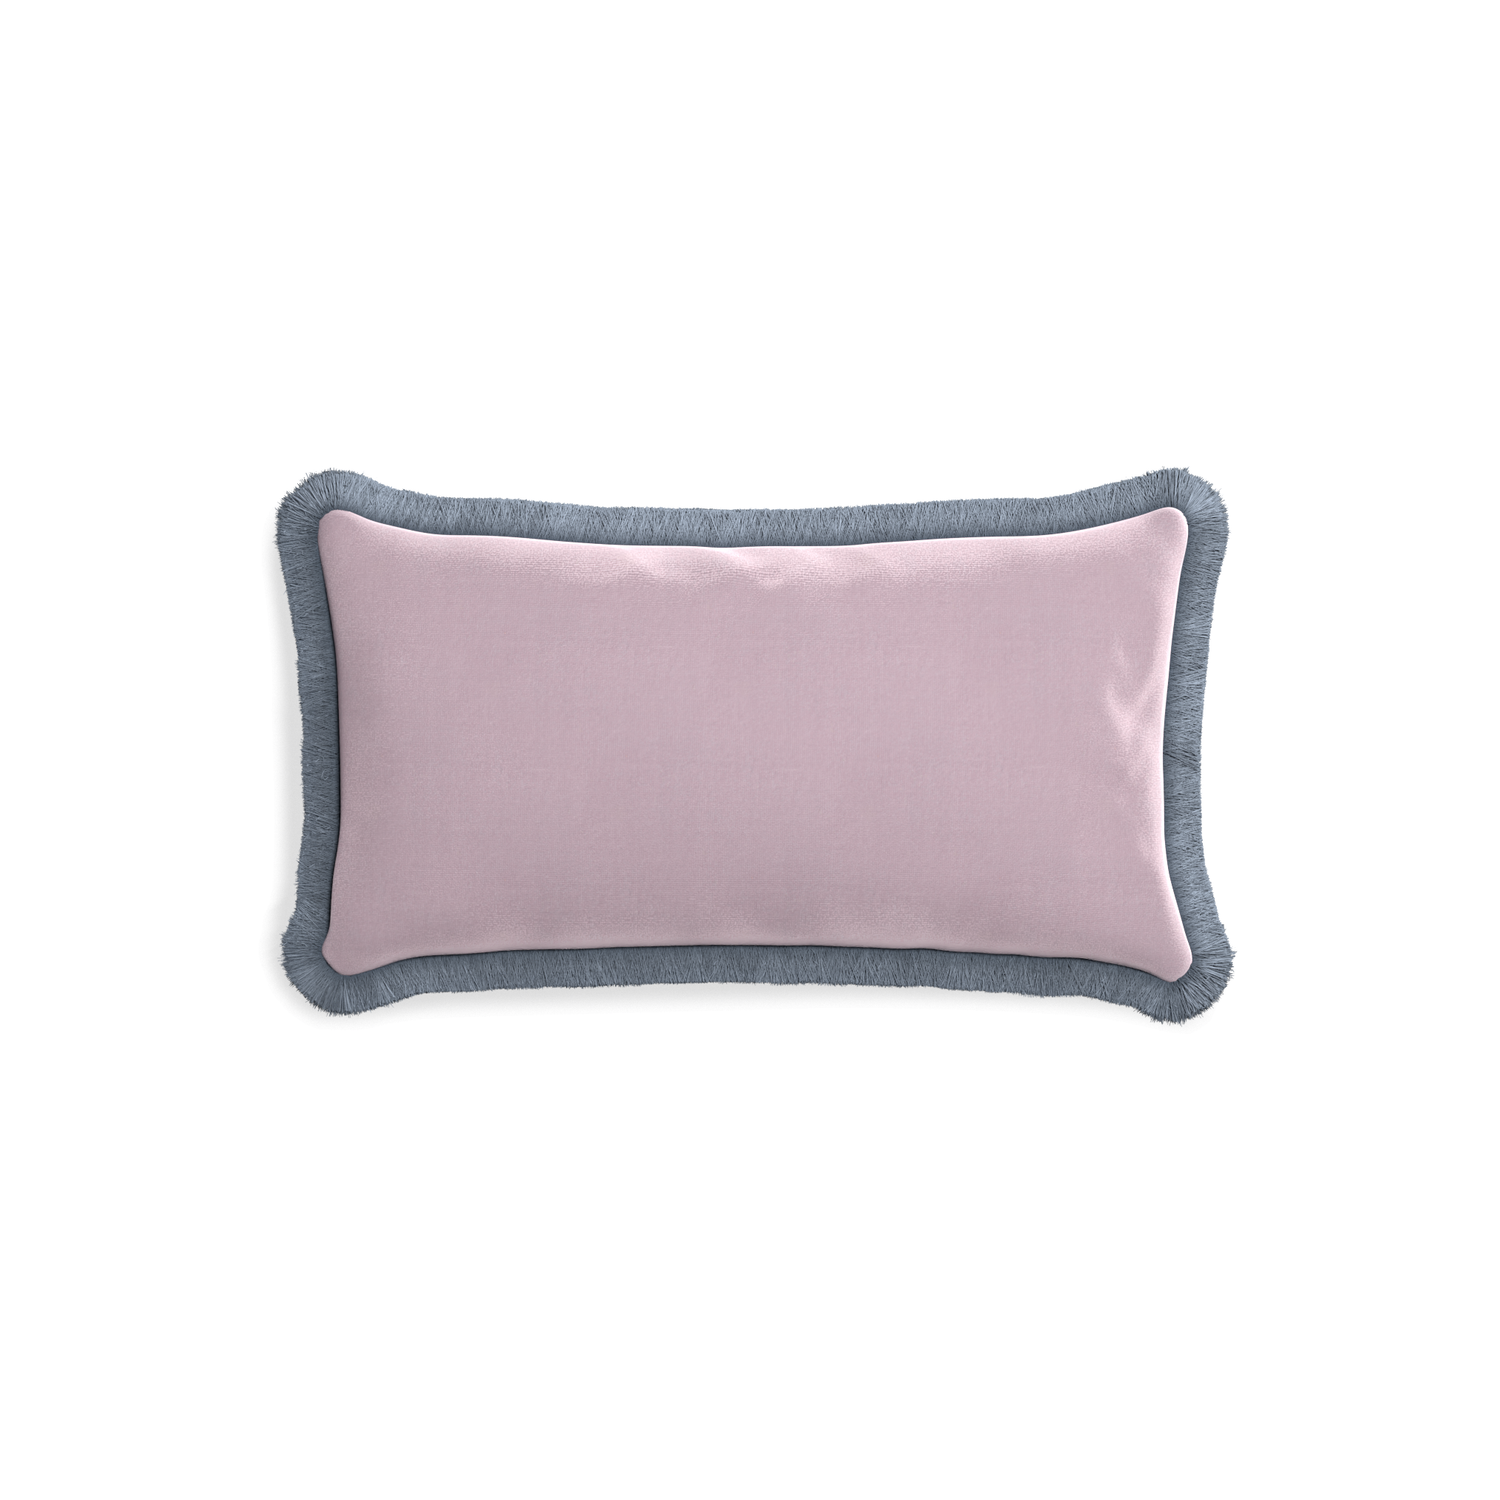 rectangle lilac velvet pillow with sky blue fringe